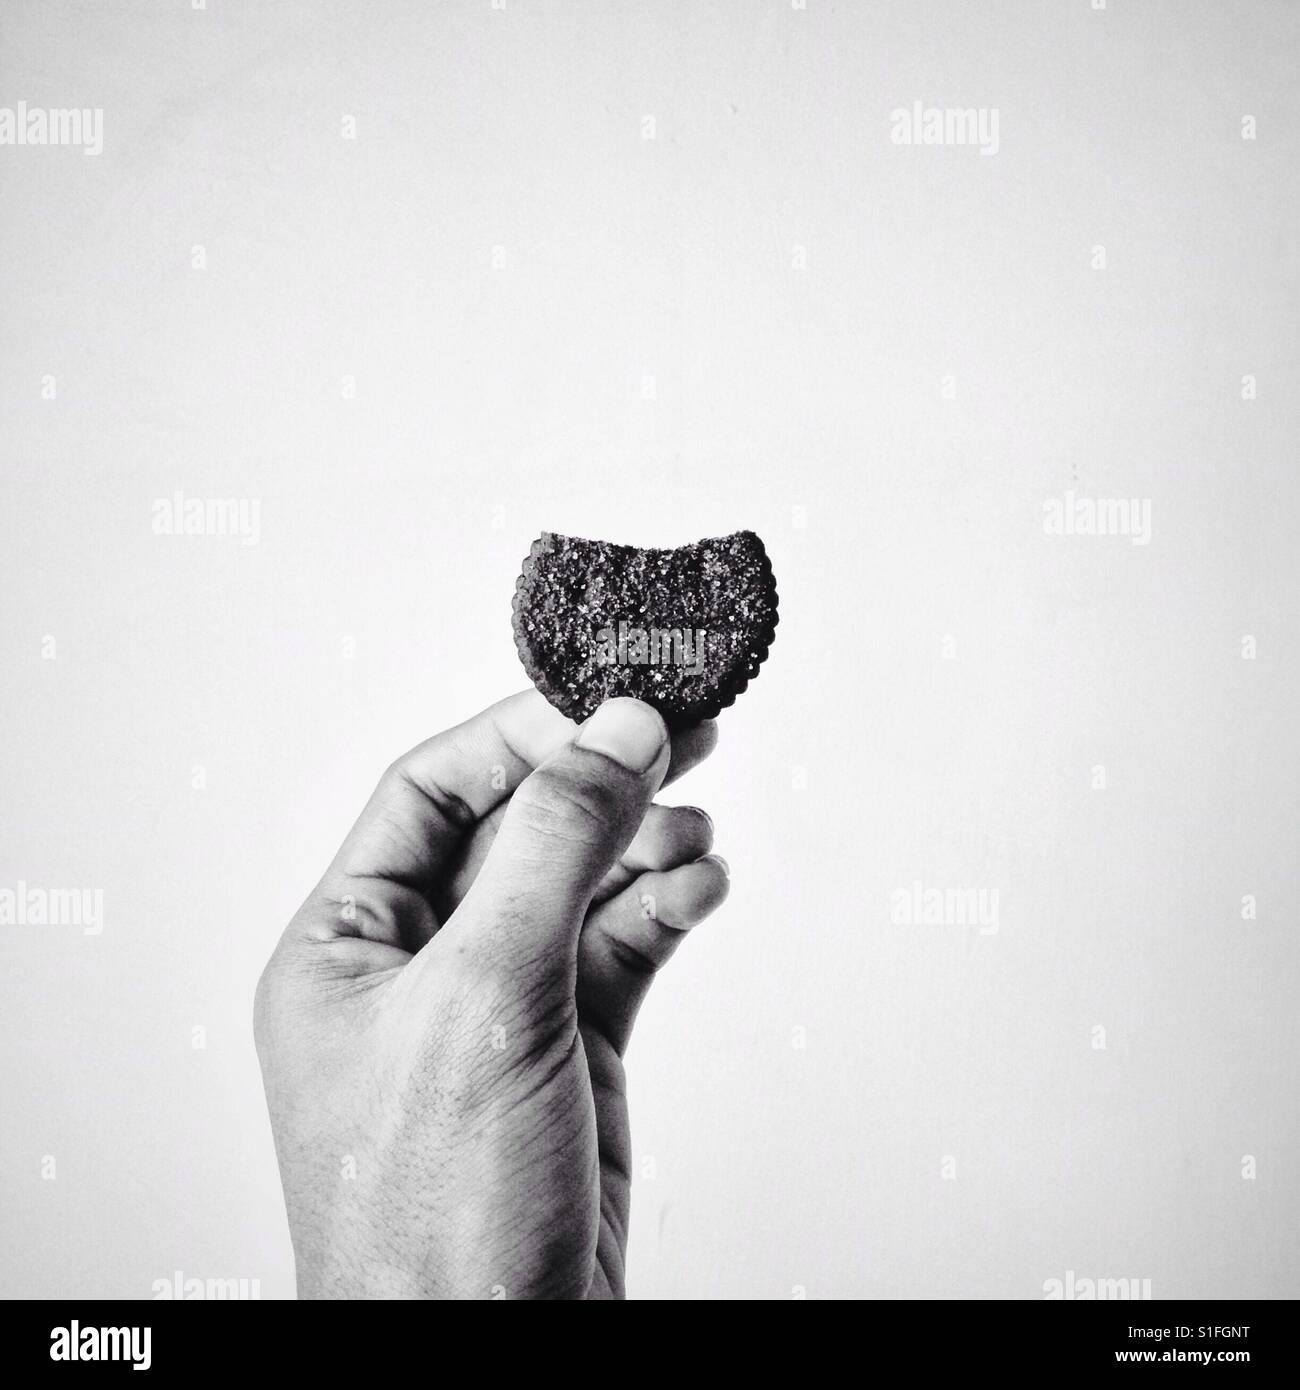 I love cookies! Stock Photo